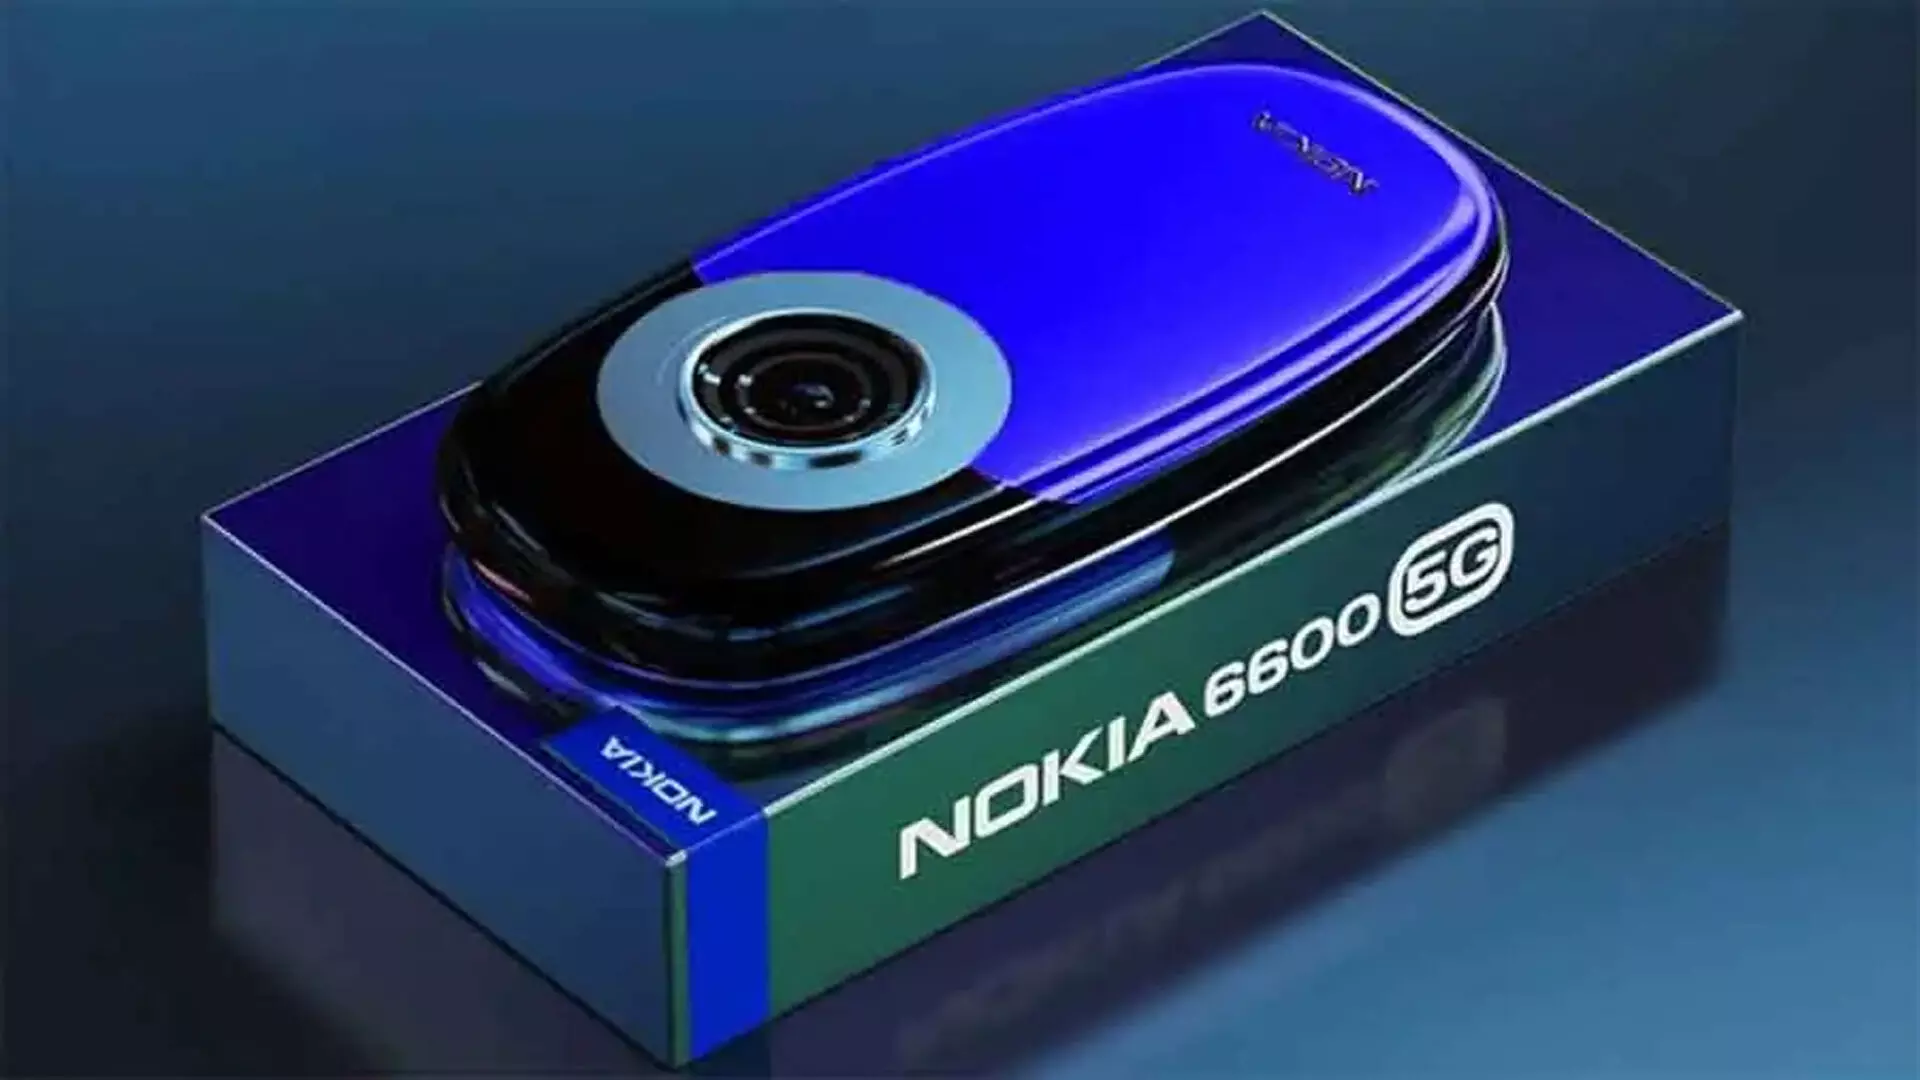 Nokia 6600 5G: मिल रही 12GB RAM, साथ में 108MP का कैमरा